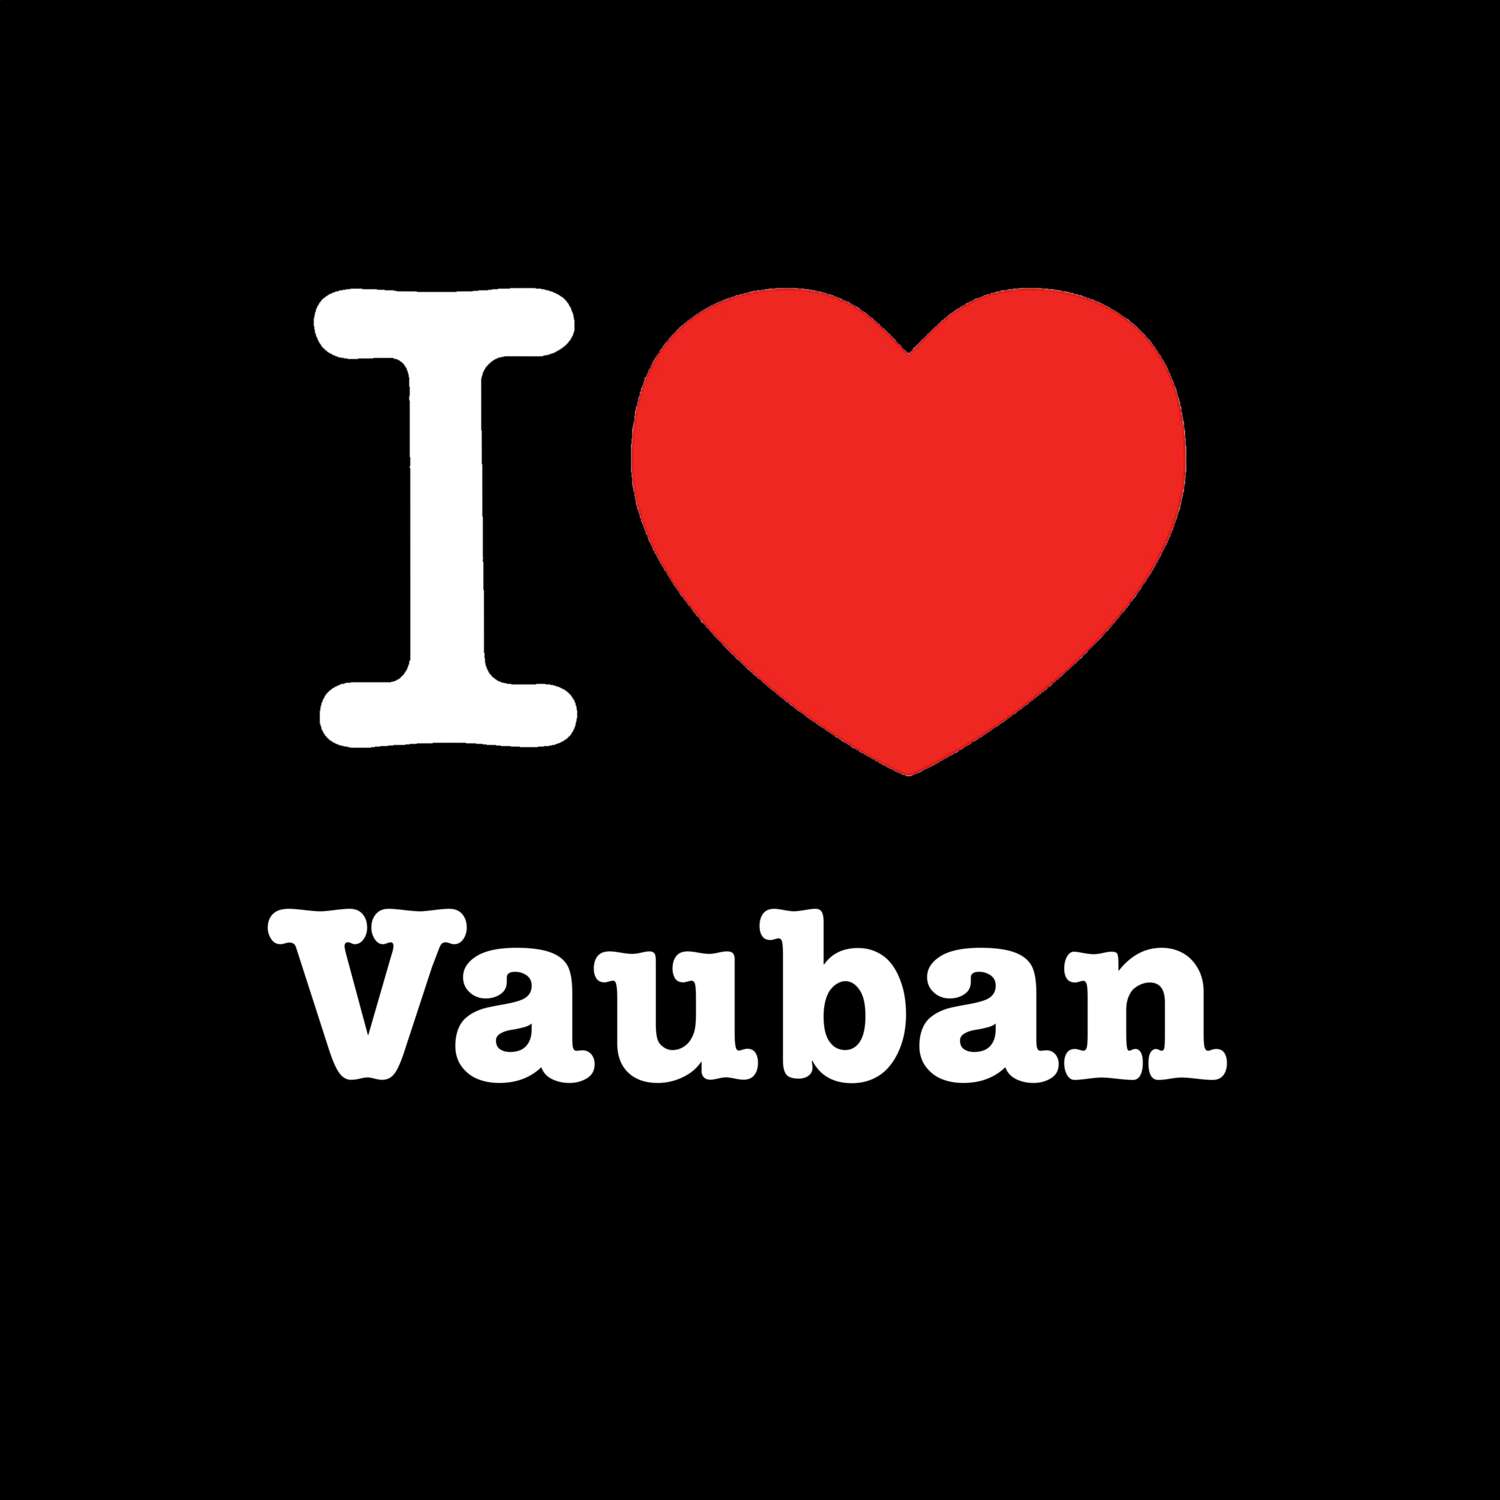 Vauban T-Shirt »I love«